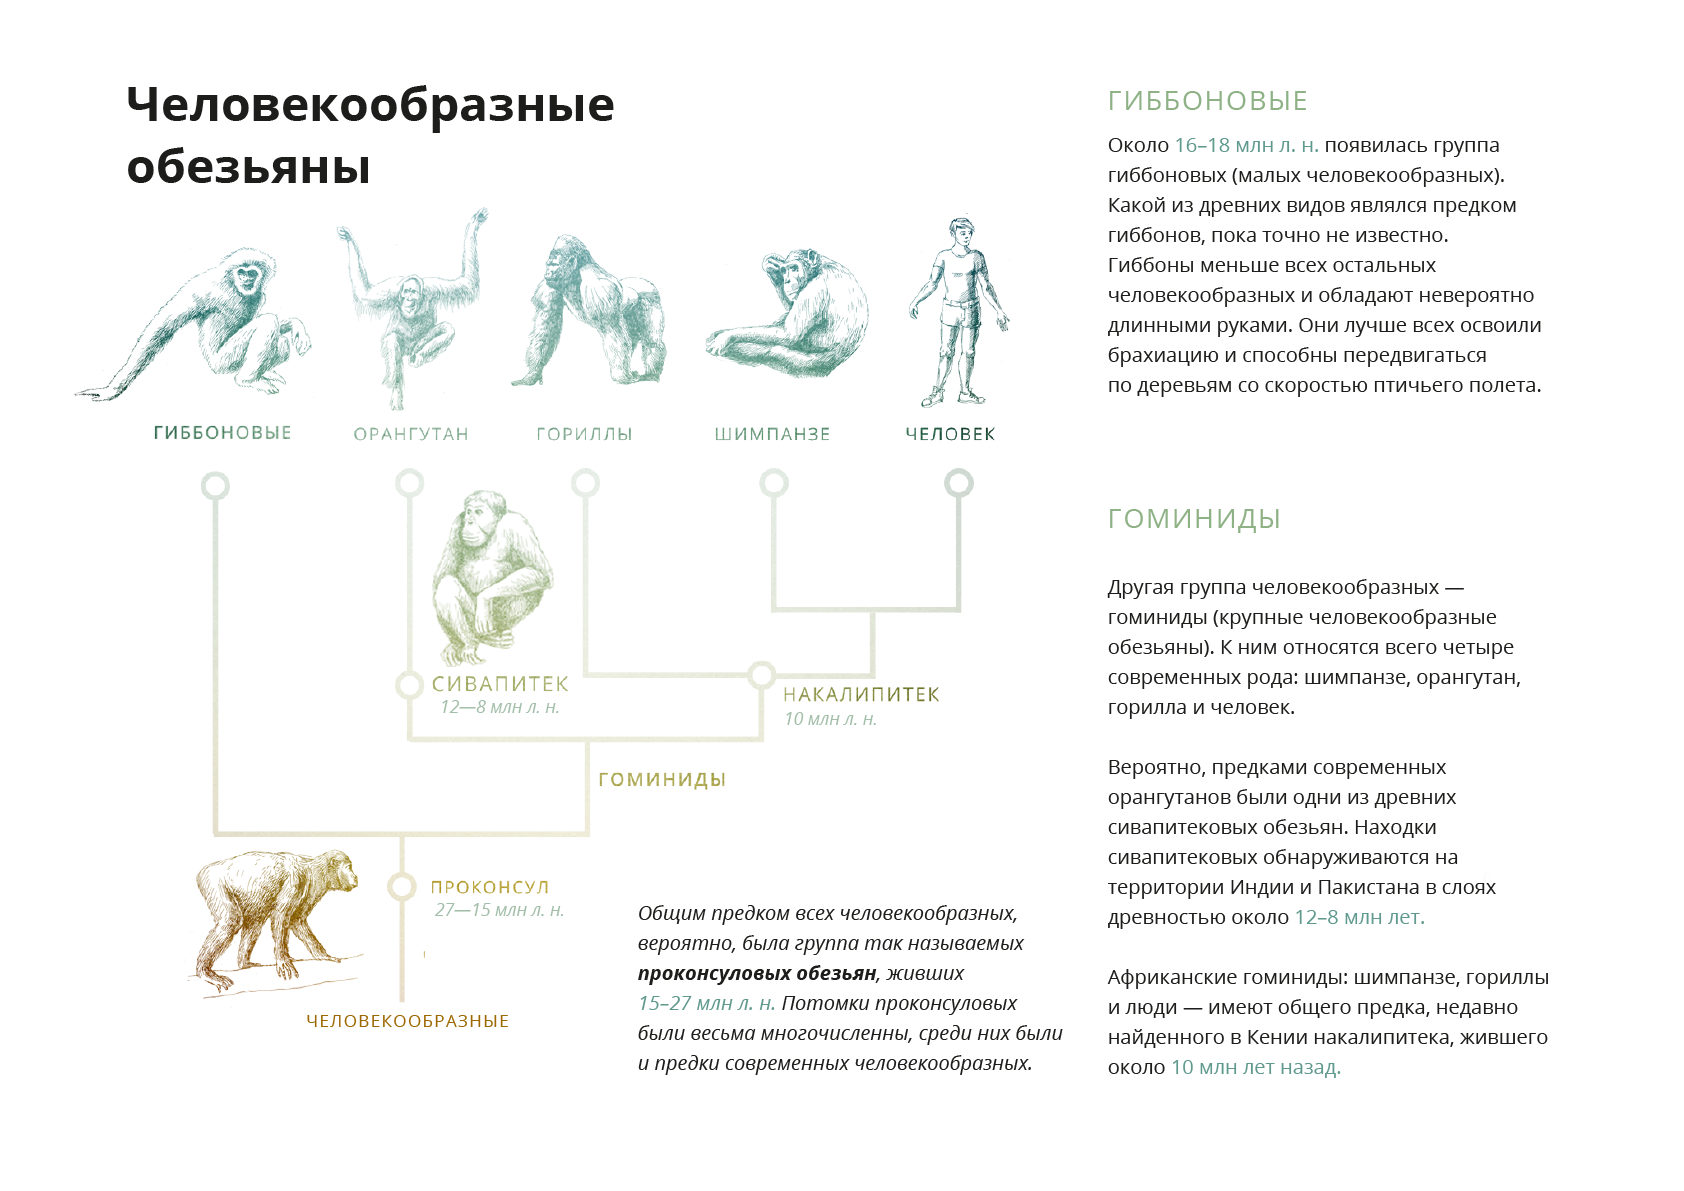 Классификация человекообразных обезьян. Человекообразные обезьяны виды. Общий предок человекообразных обезьян. Общий предок человека и обезьяны.